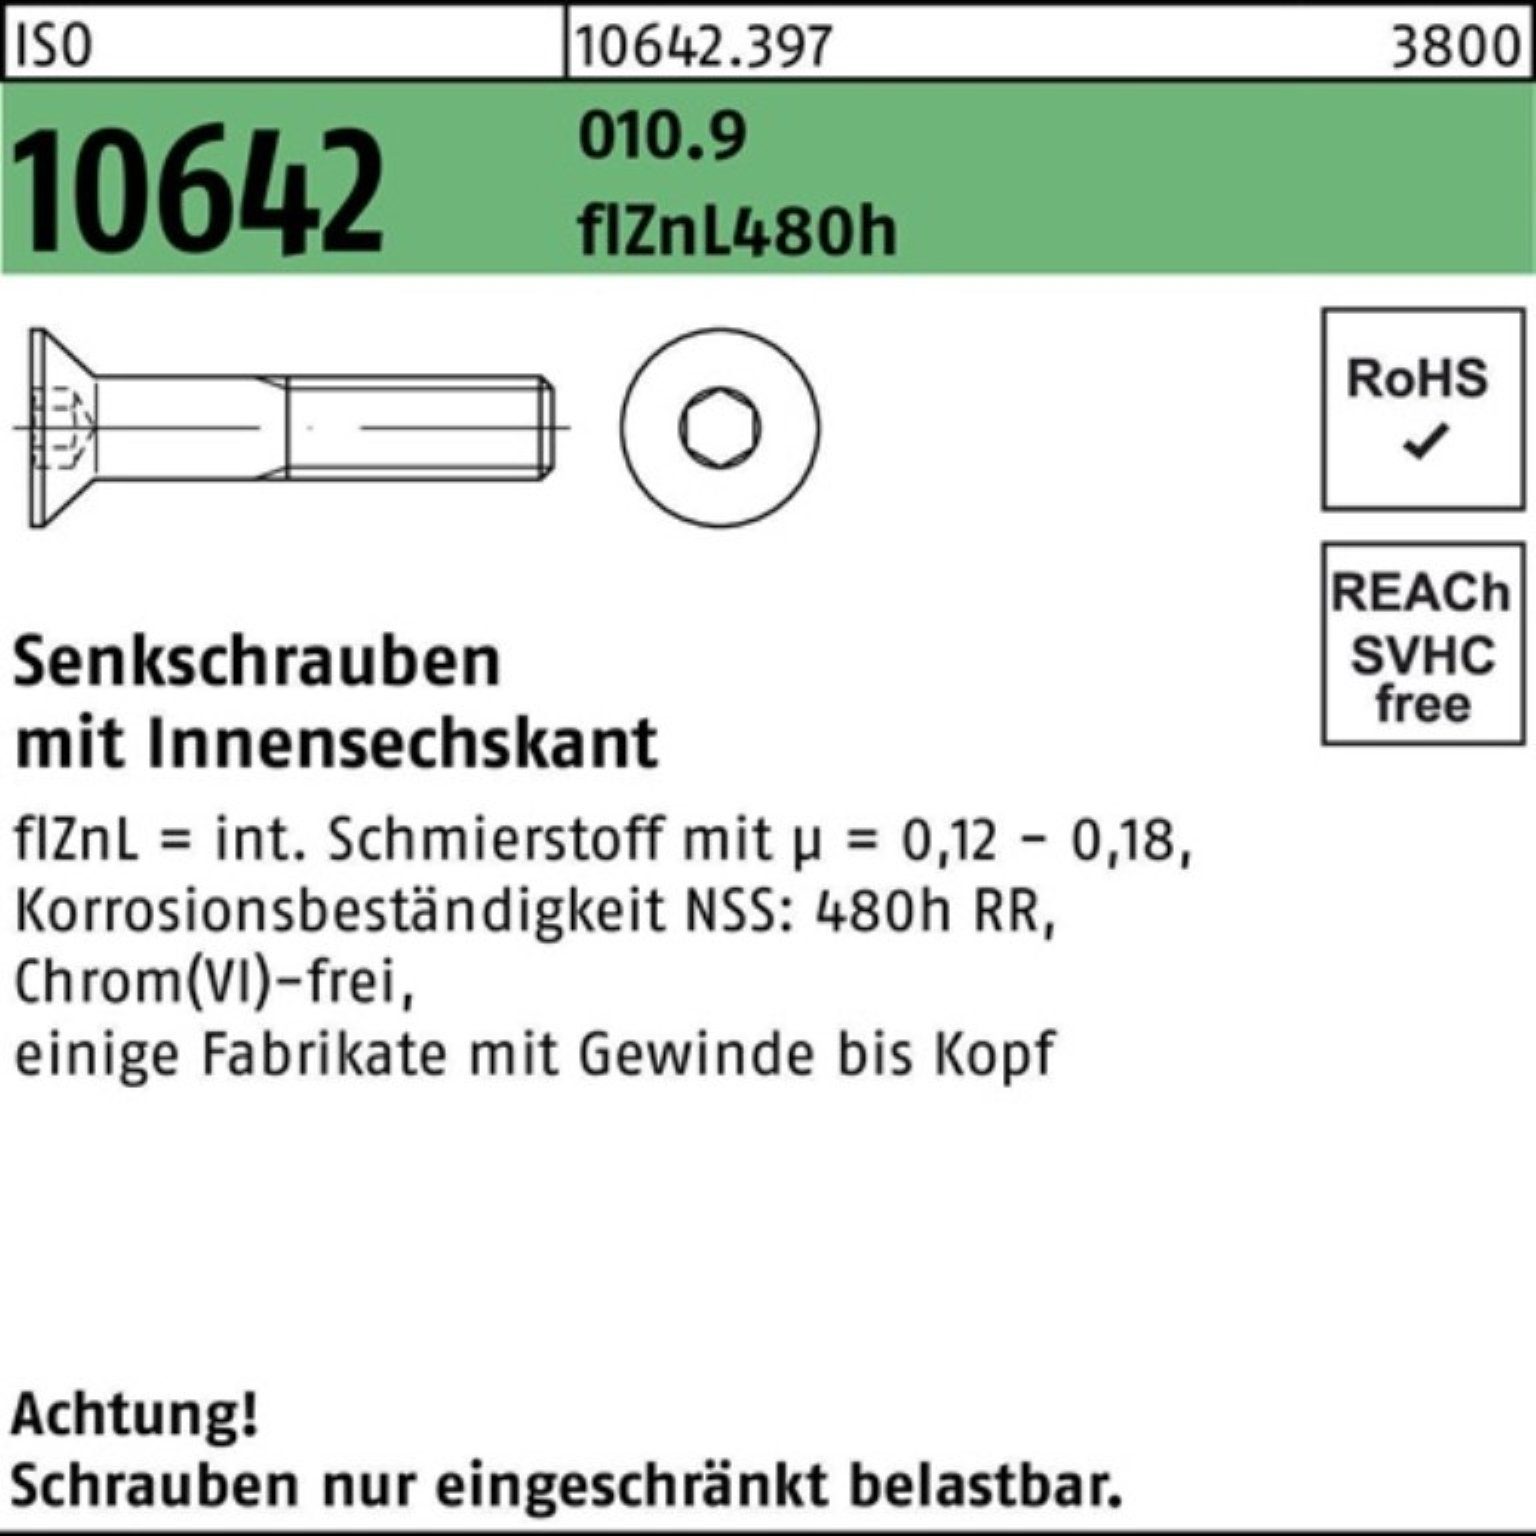 480h Pack 10642 Innen-6kt Reyher 010.9 100er ISO flZnL Senkschraube Senkschraube zi M10x35